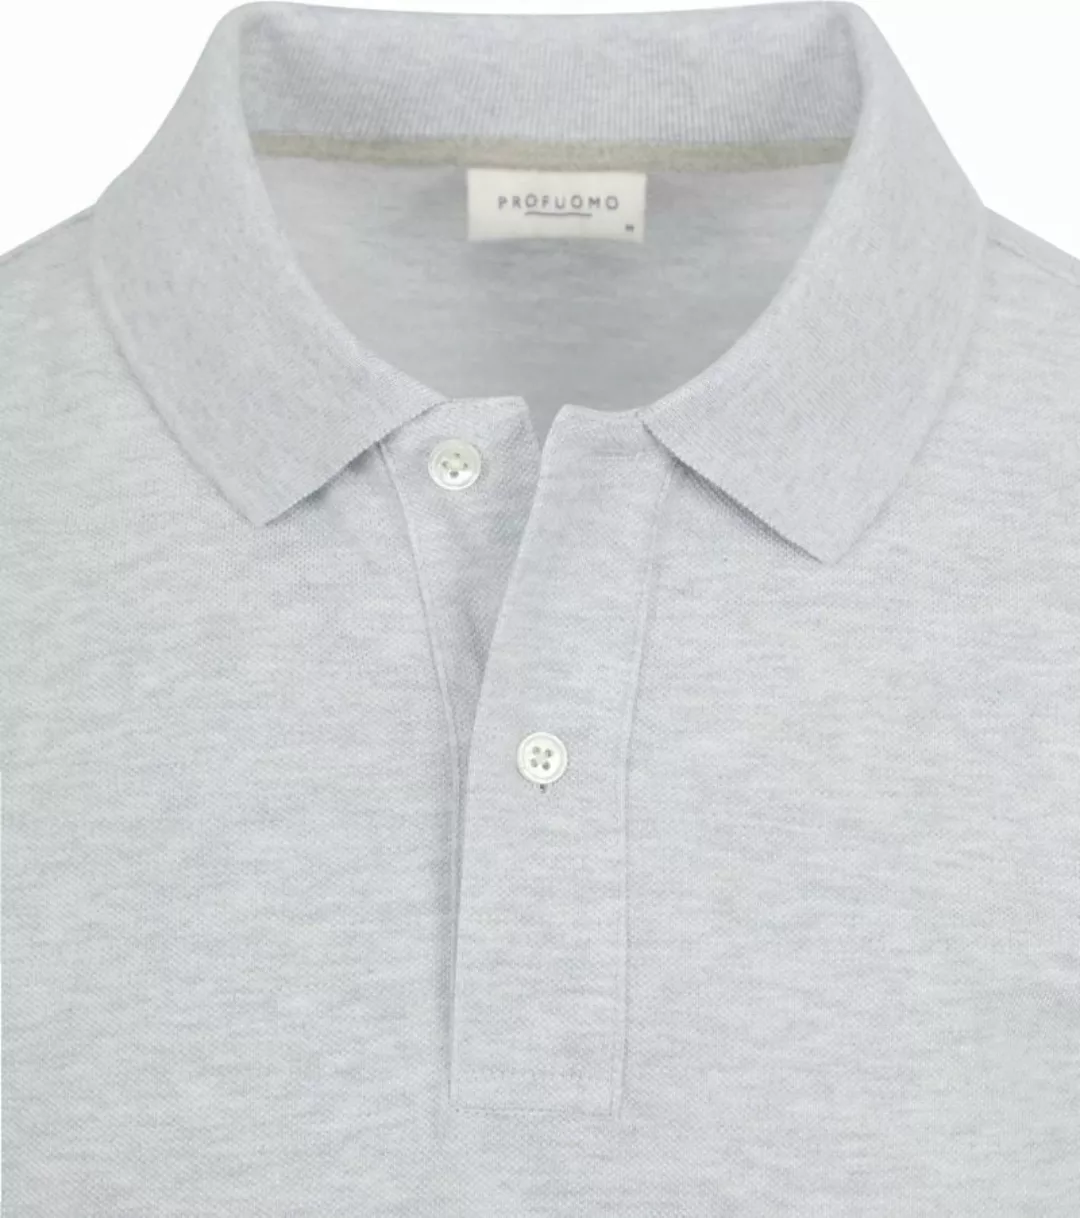 Profuomo Piqué Poloshirt Grau - Größe M günstig online kaufen